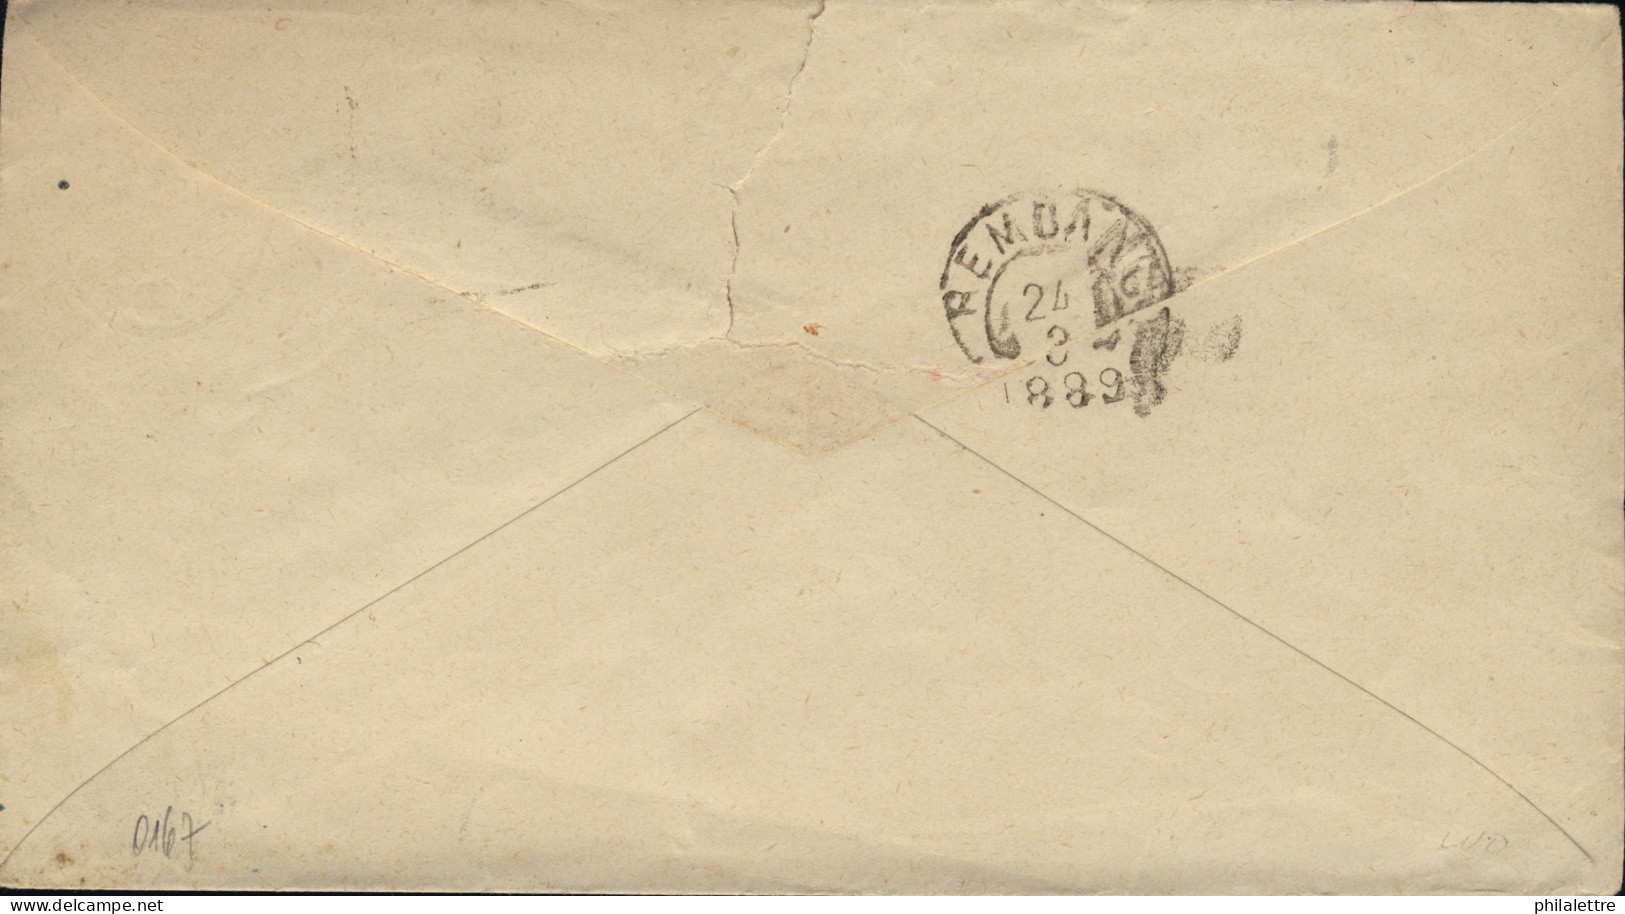 NED. INDIE / DUTCH INDIES / INDES NÉERLANDAISES - 1889 10c Postal Envelope Used From SEMARANG To REMBANG - Niederländisch-Indien